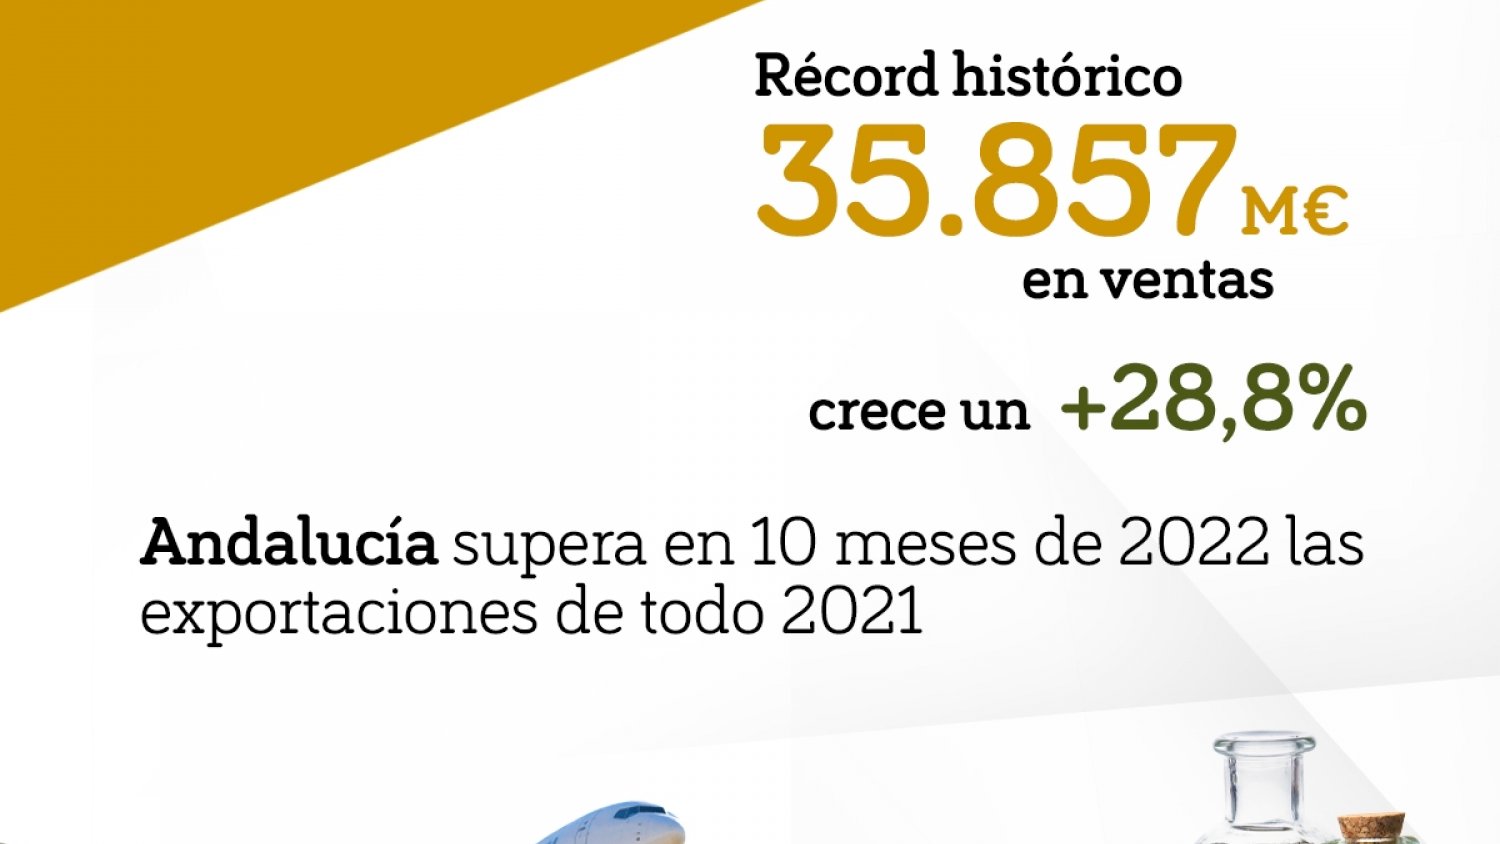 Andalucía supera en 10 meses de 2022 las exportaciones de todo 2021, último año récord